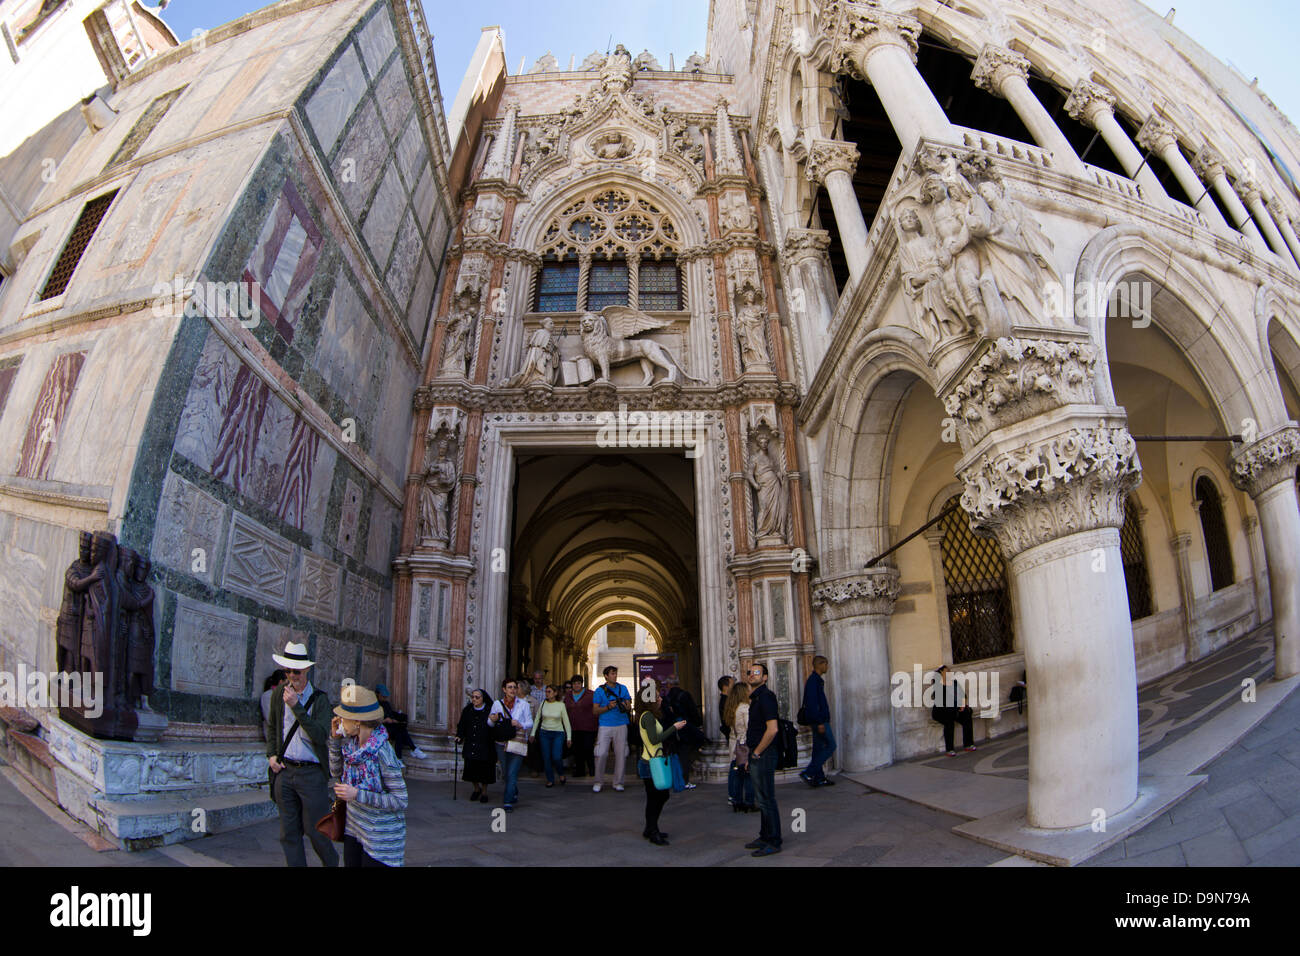 Porta della Carta, St. Mark's Square, Venice Stock Photo